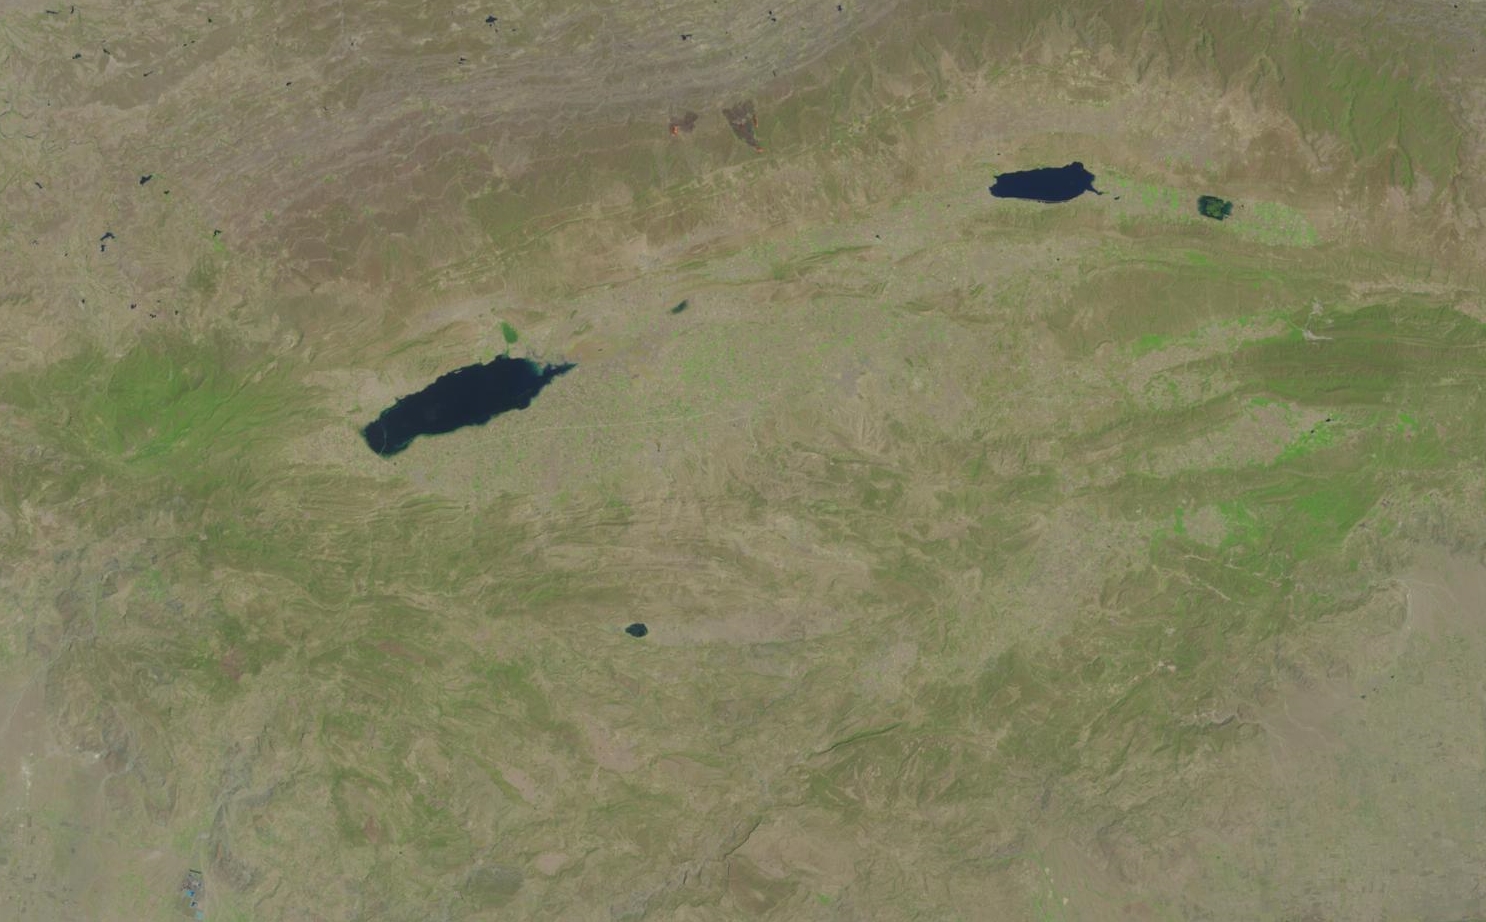 دریاچه اوچالی در دره سون واقع شده است